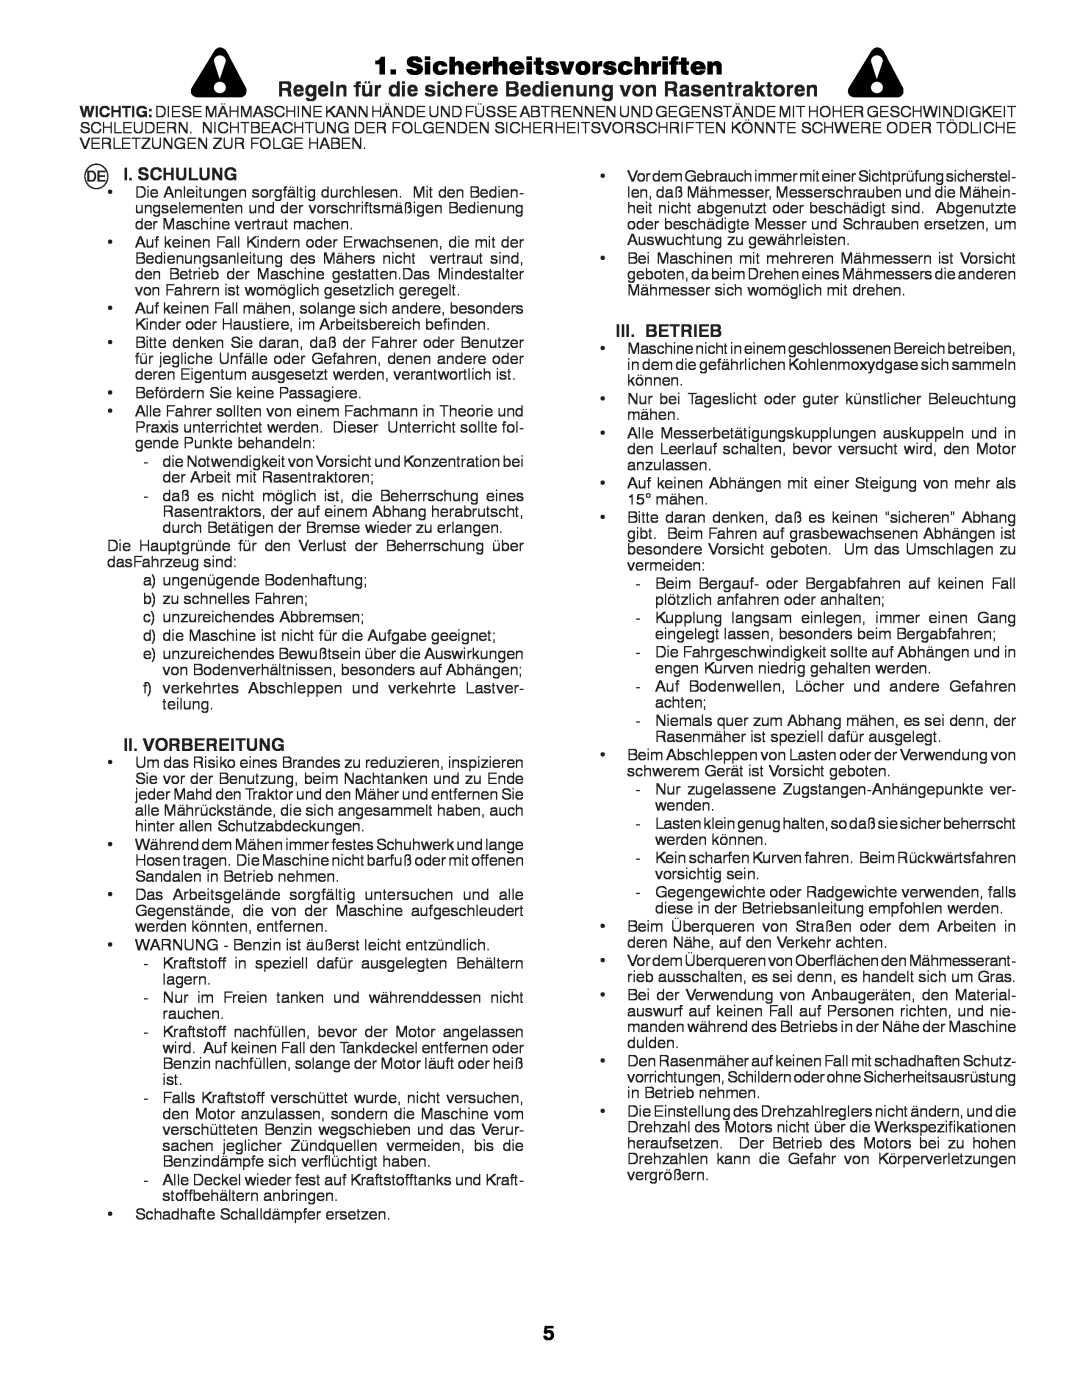 Partner Tech P145107H Sicherheitsvorschriften, Regeln für die sichere Bedienung von Rasentraktoren, I. Schulung 